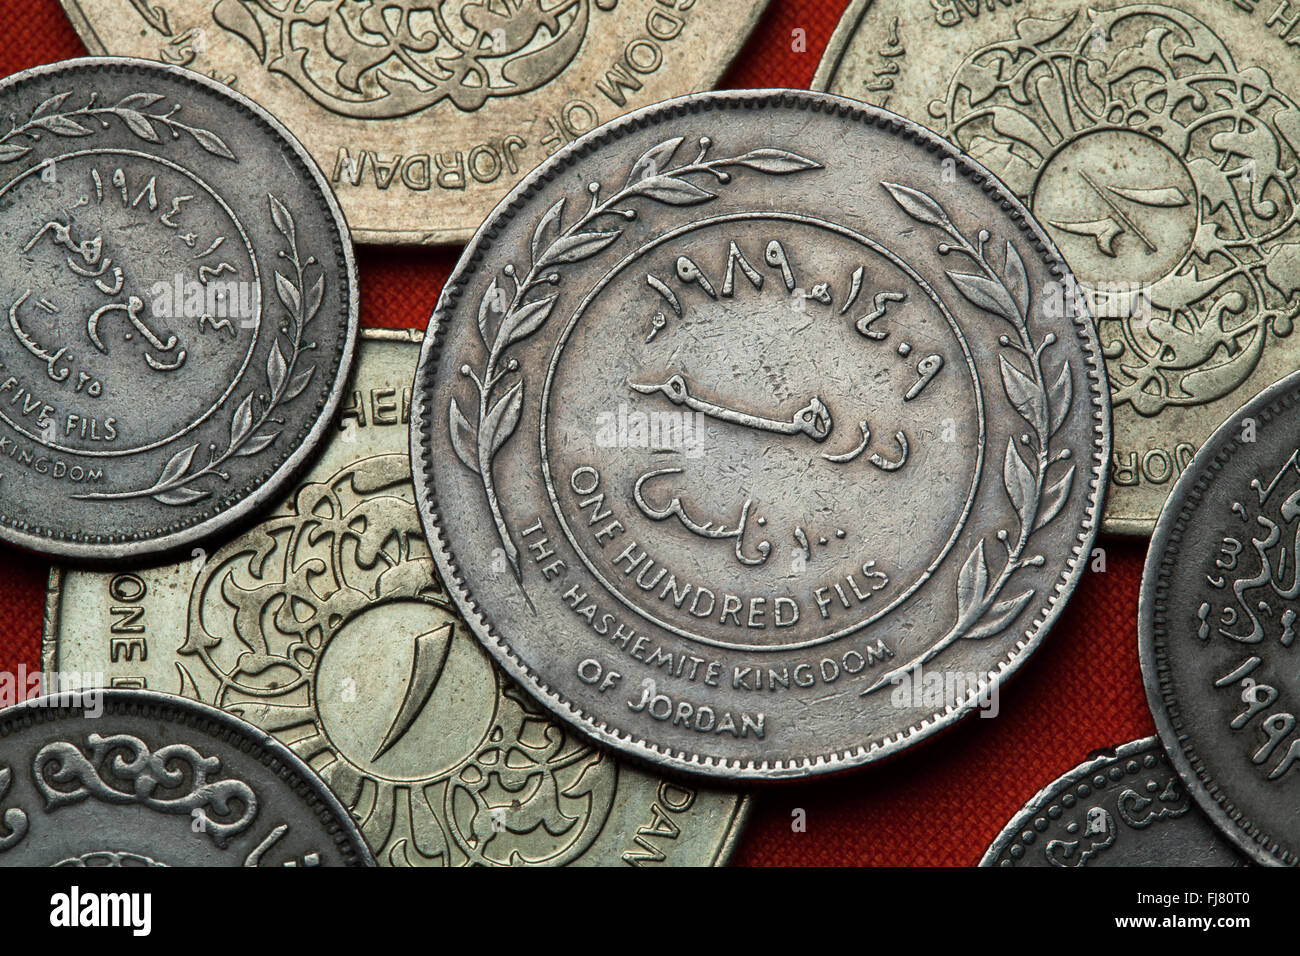 Coins of Jordan. Jordanian 100 fils coin. Stock Photo